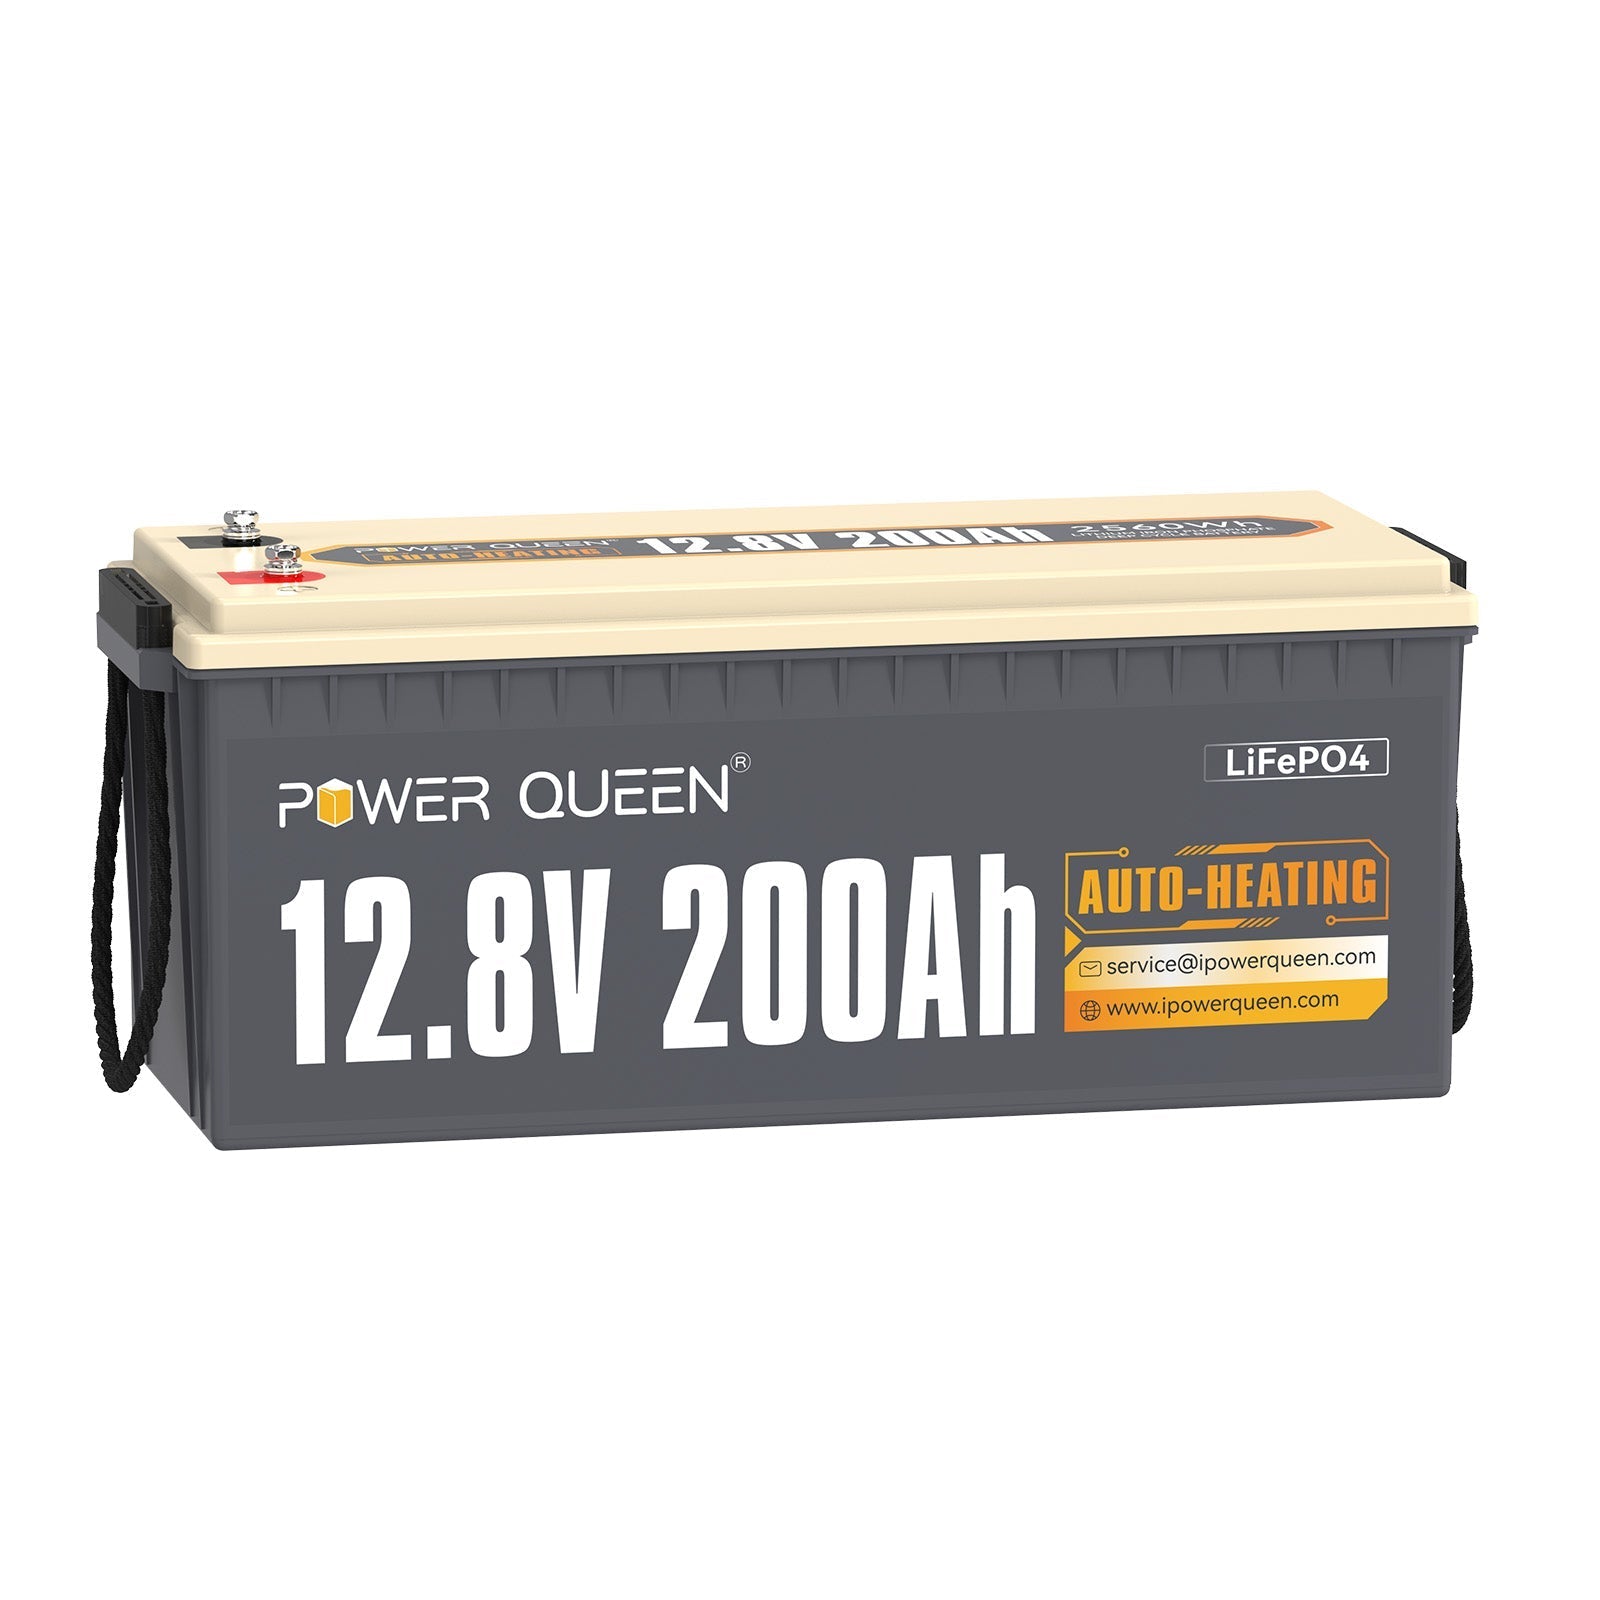 【Como nuevo】Batería LiFePO4 autocalentable Power Queen de 12,8 V y 200 Ah, BMS integrado de 100 A